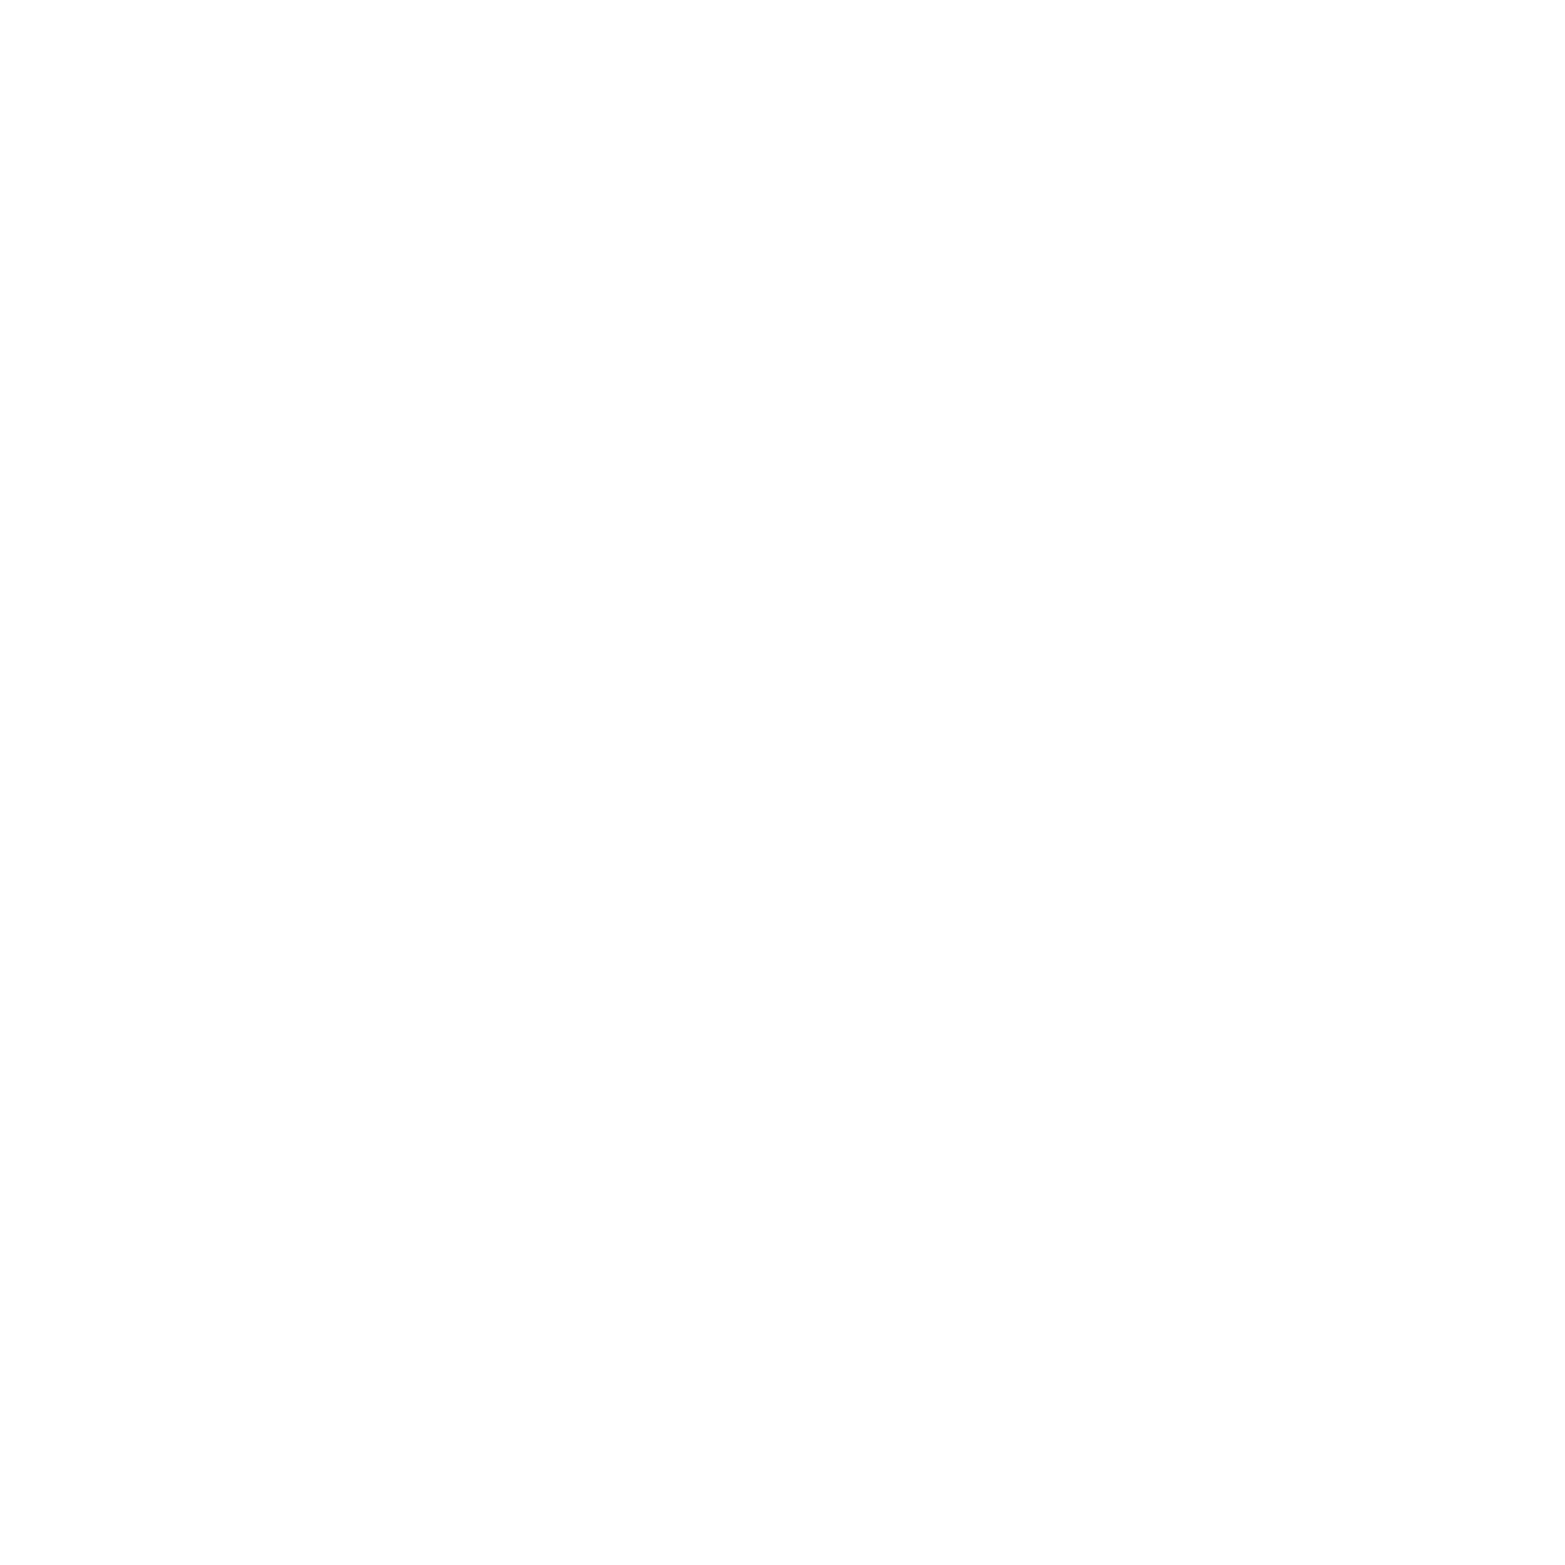 Rexford Industrial logo pour fonds sombres (PNG transparent)